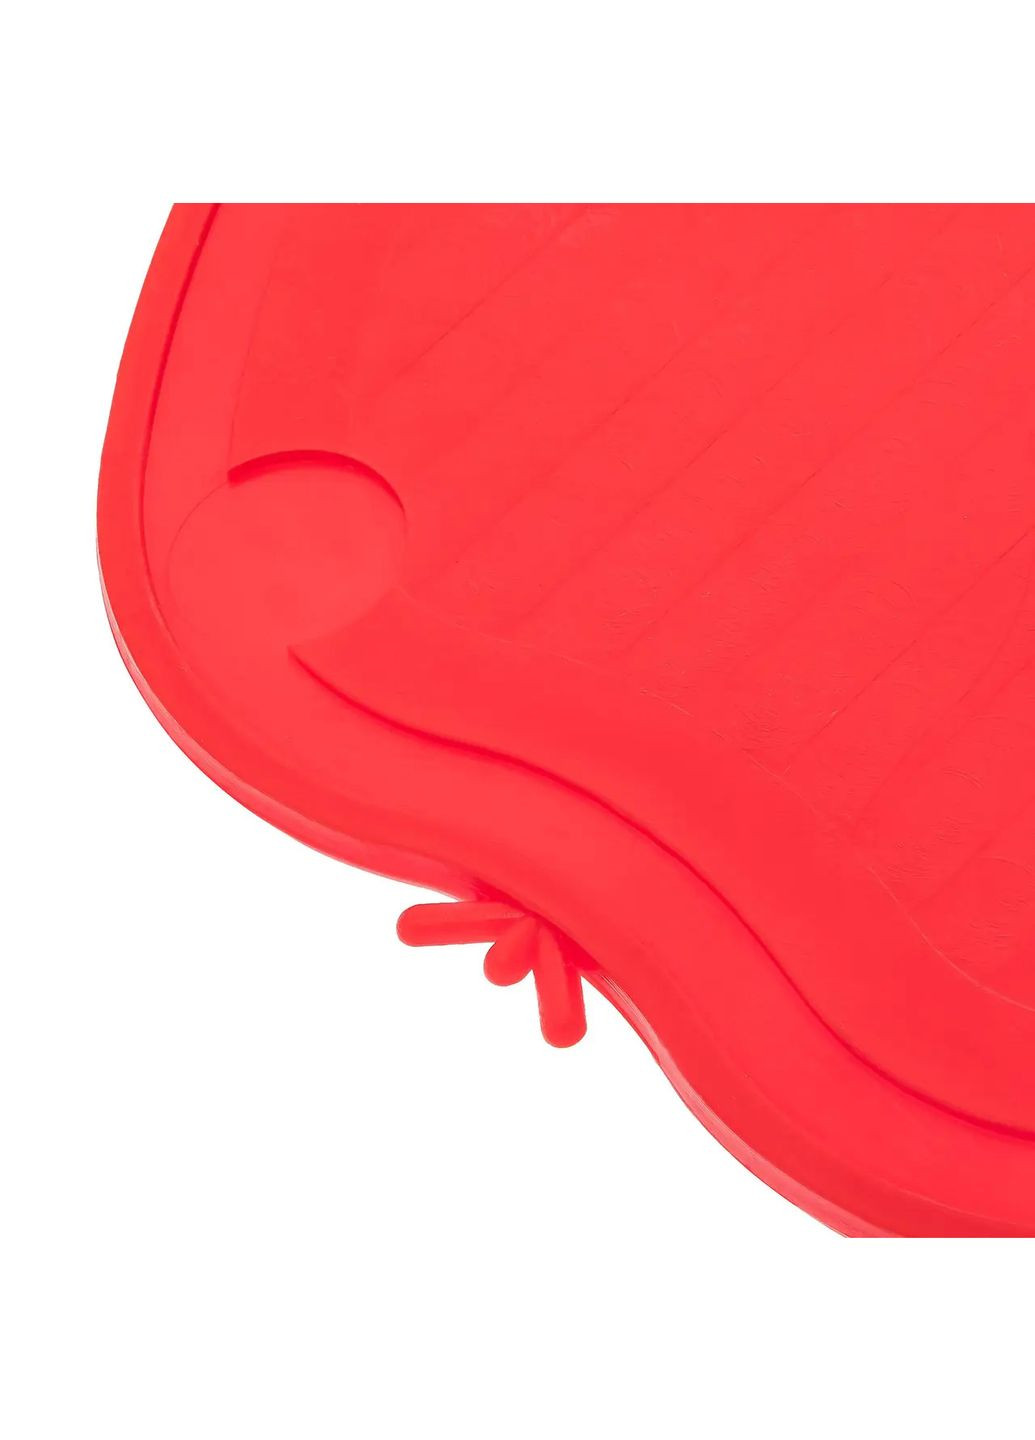 Дошка обробна пластикова для нарізування м'яса, риби, овочів і фруктів у формі яблука (220х210 мм) Червоний Kitchette (263346517)